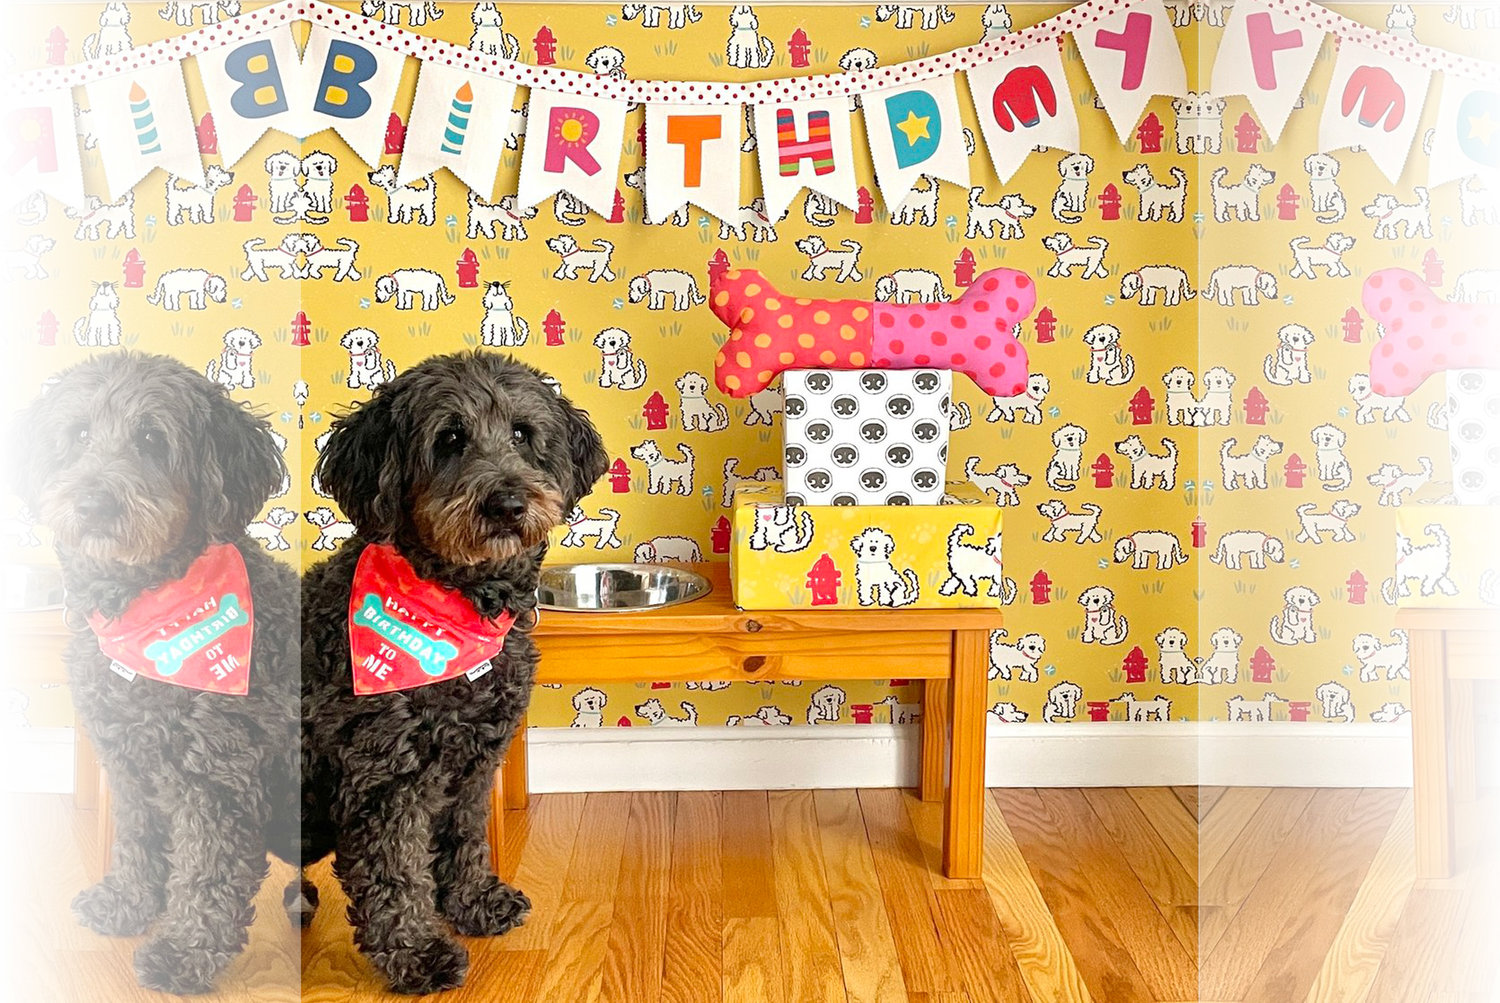 Shaban’s pup Oscar poses in a birthday bandana